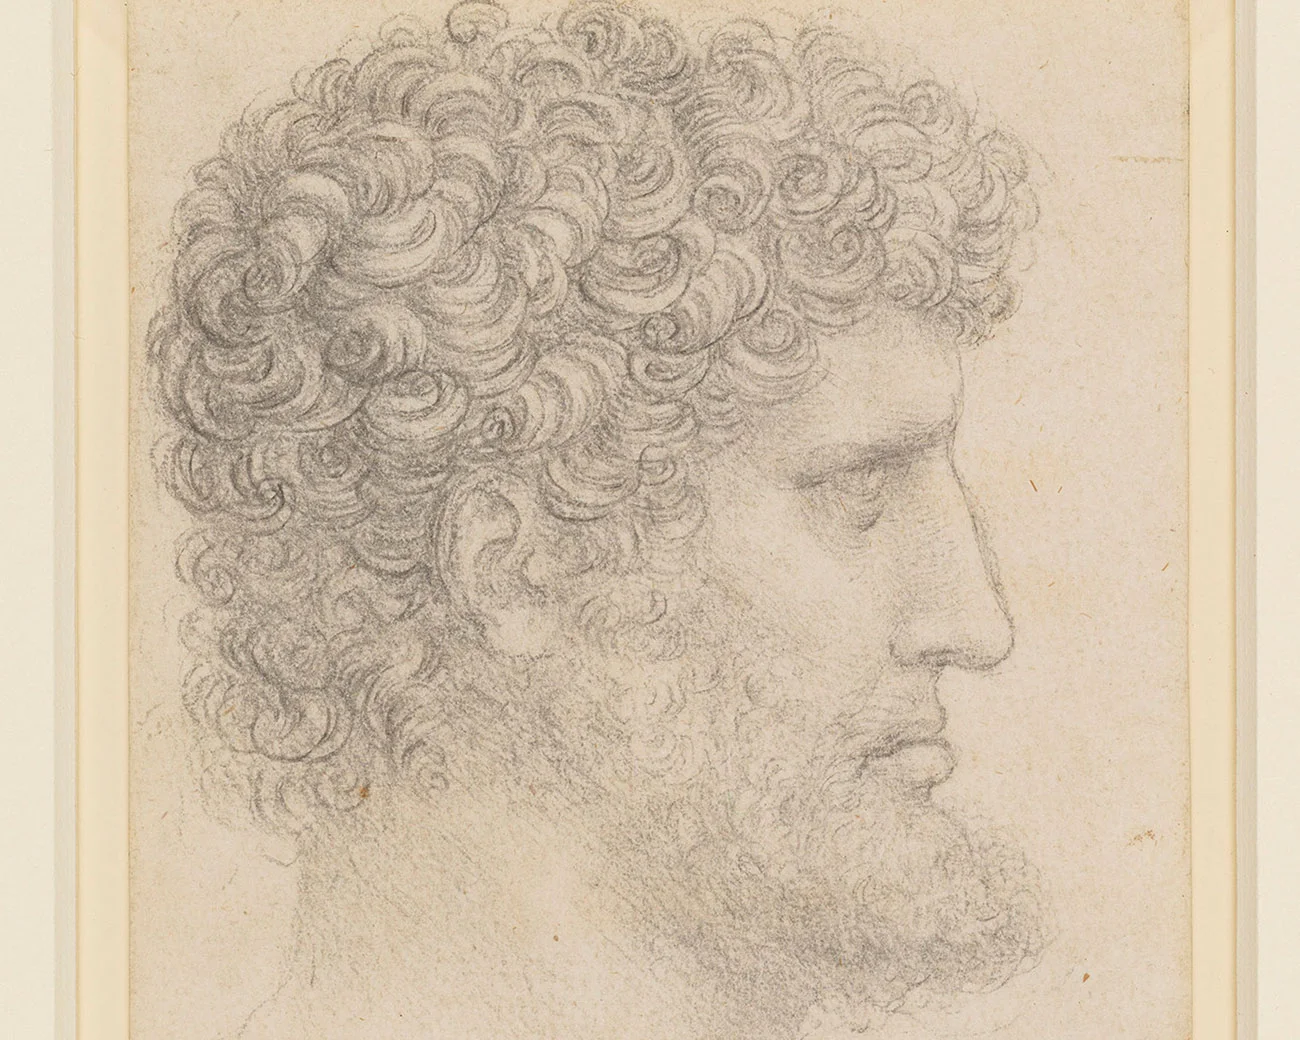 达·芬奇素描《侧面有胡子的卷发男子头像》